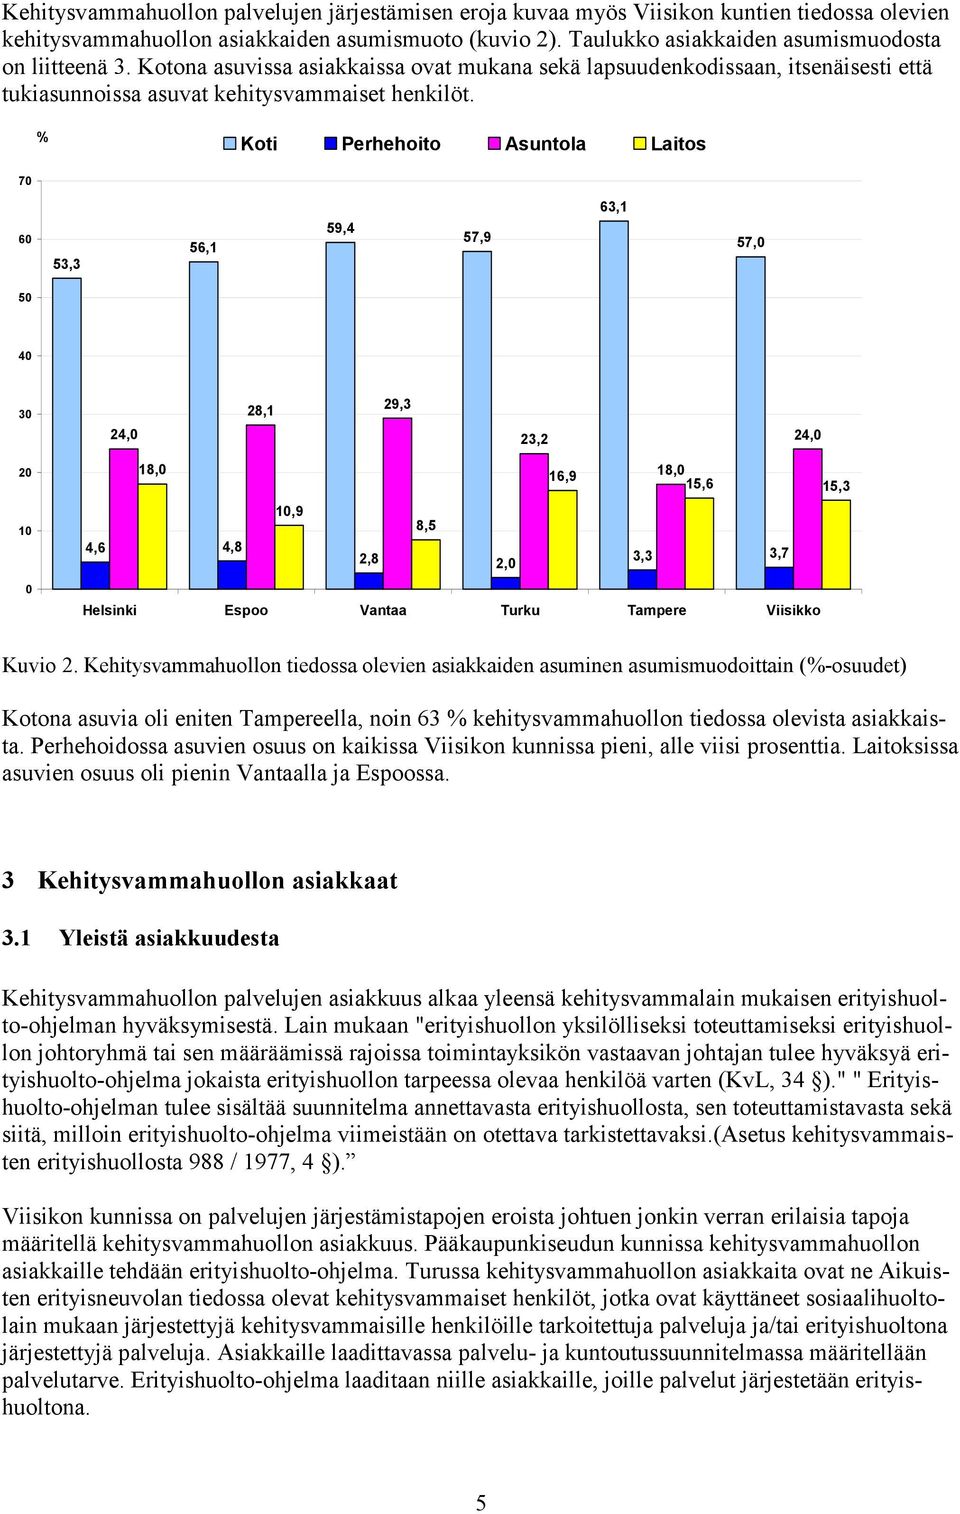 % Koti Perhehoito Asuntola Laitos 70 60 53,3 56,1 59,4 57,9 63,1 57,0 50 40 30 24,0 28,1 29,3 23,2 24,0 20 18,0 16,9 18,0 15,6 15,3 10 4,6 4,8 10,9 8,5 2,8 2,0 3,3 3,7 0 Helsinki Espoo Vantaa Turku